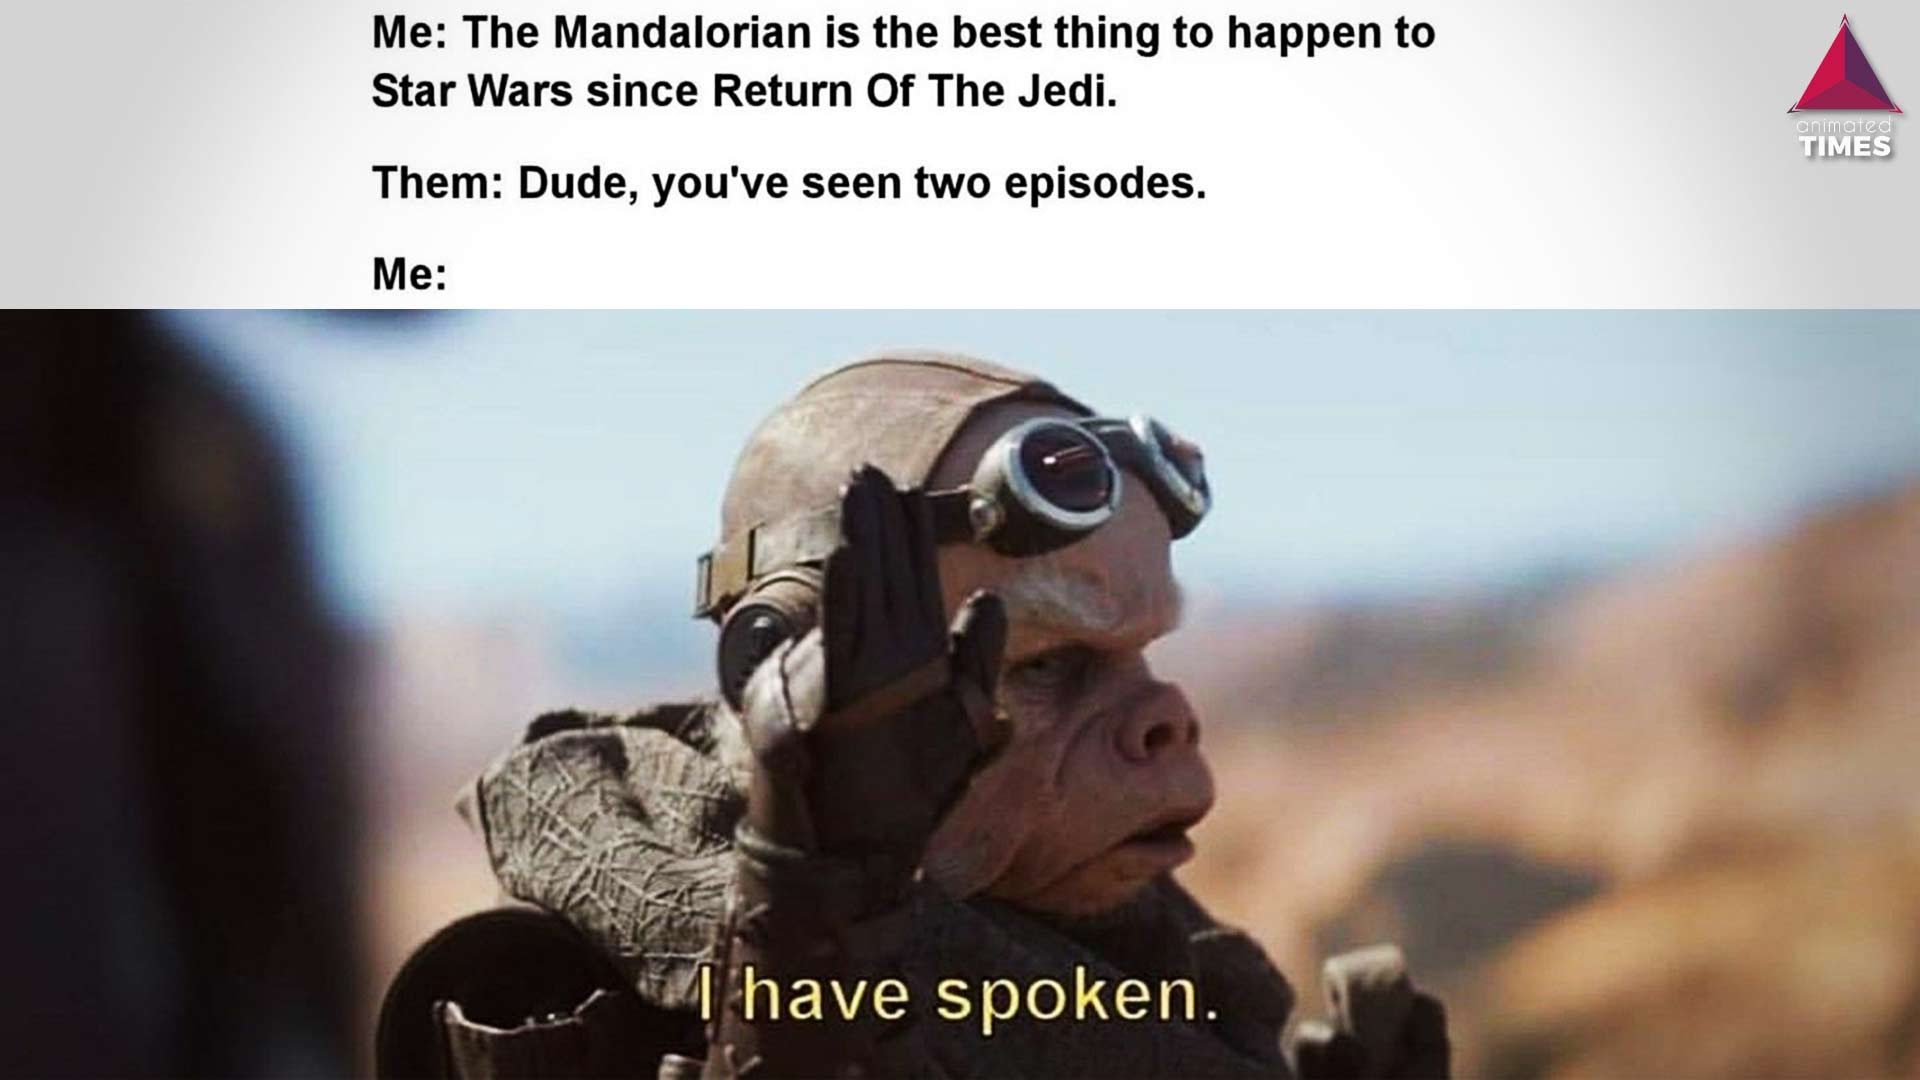 The Mandalorian: 10 Amusing “I Have Spoken” Memes